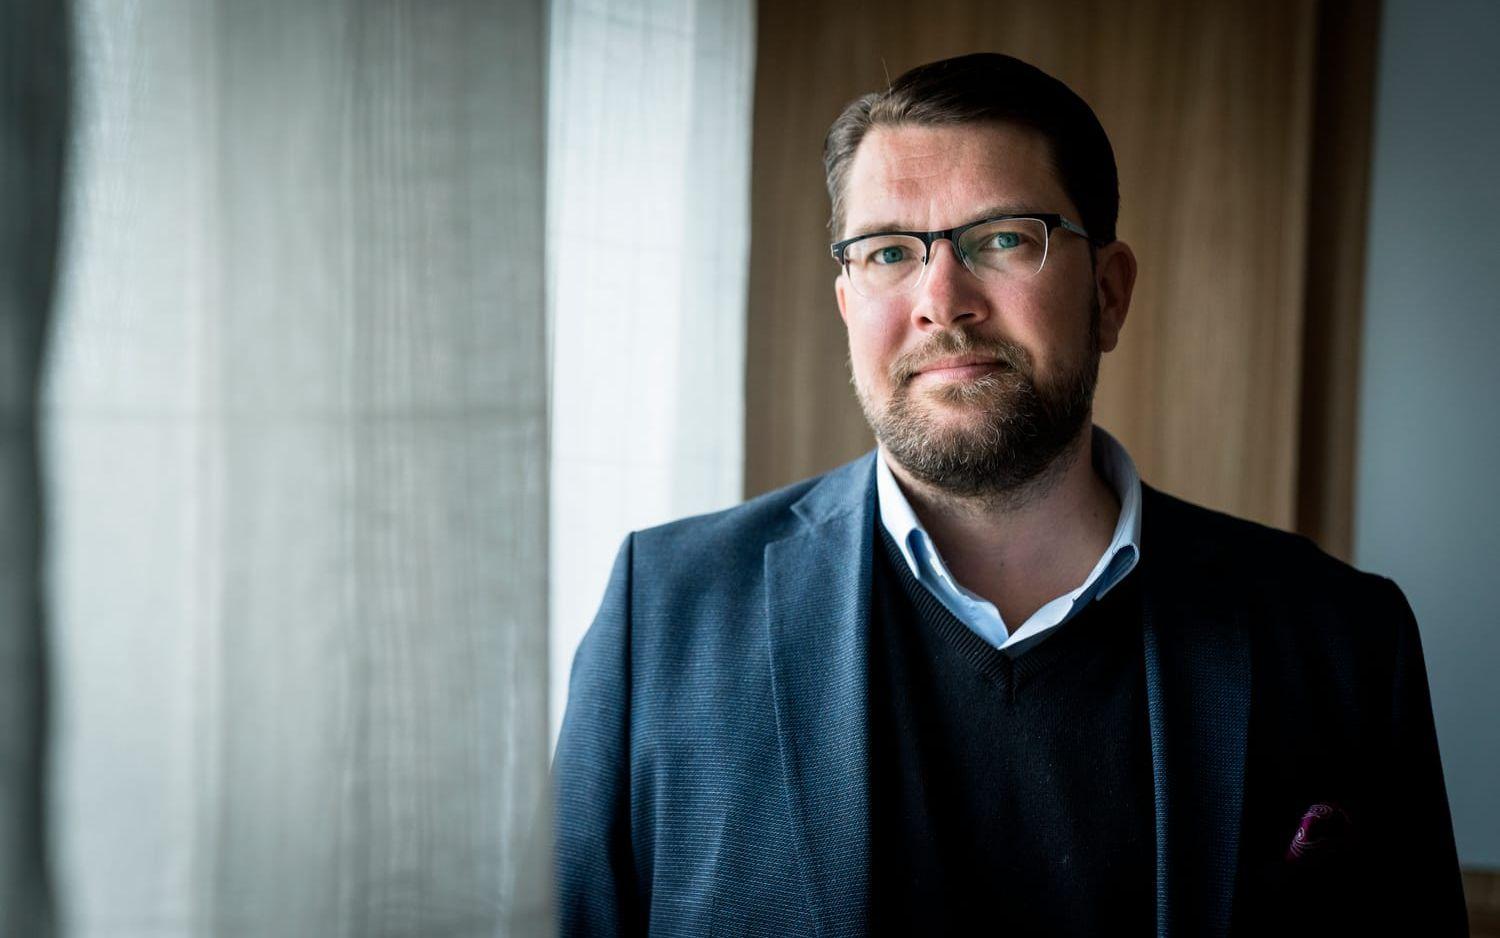 Sverigedemokraternas partiledare Jimmie Åkesson. 